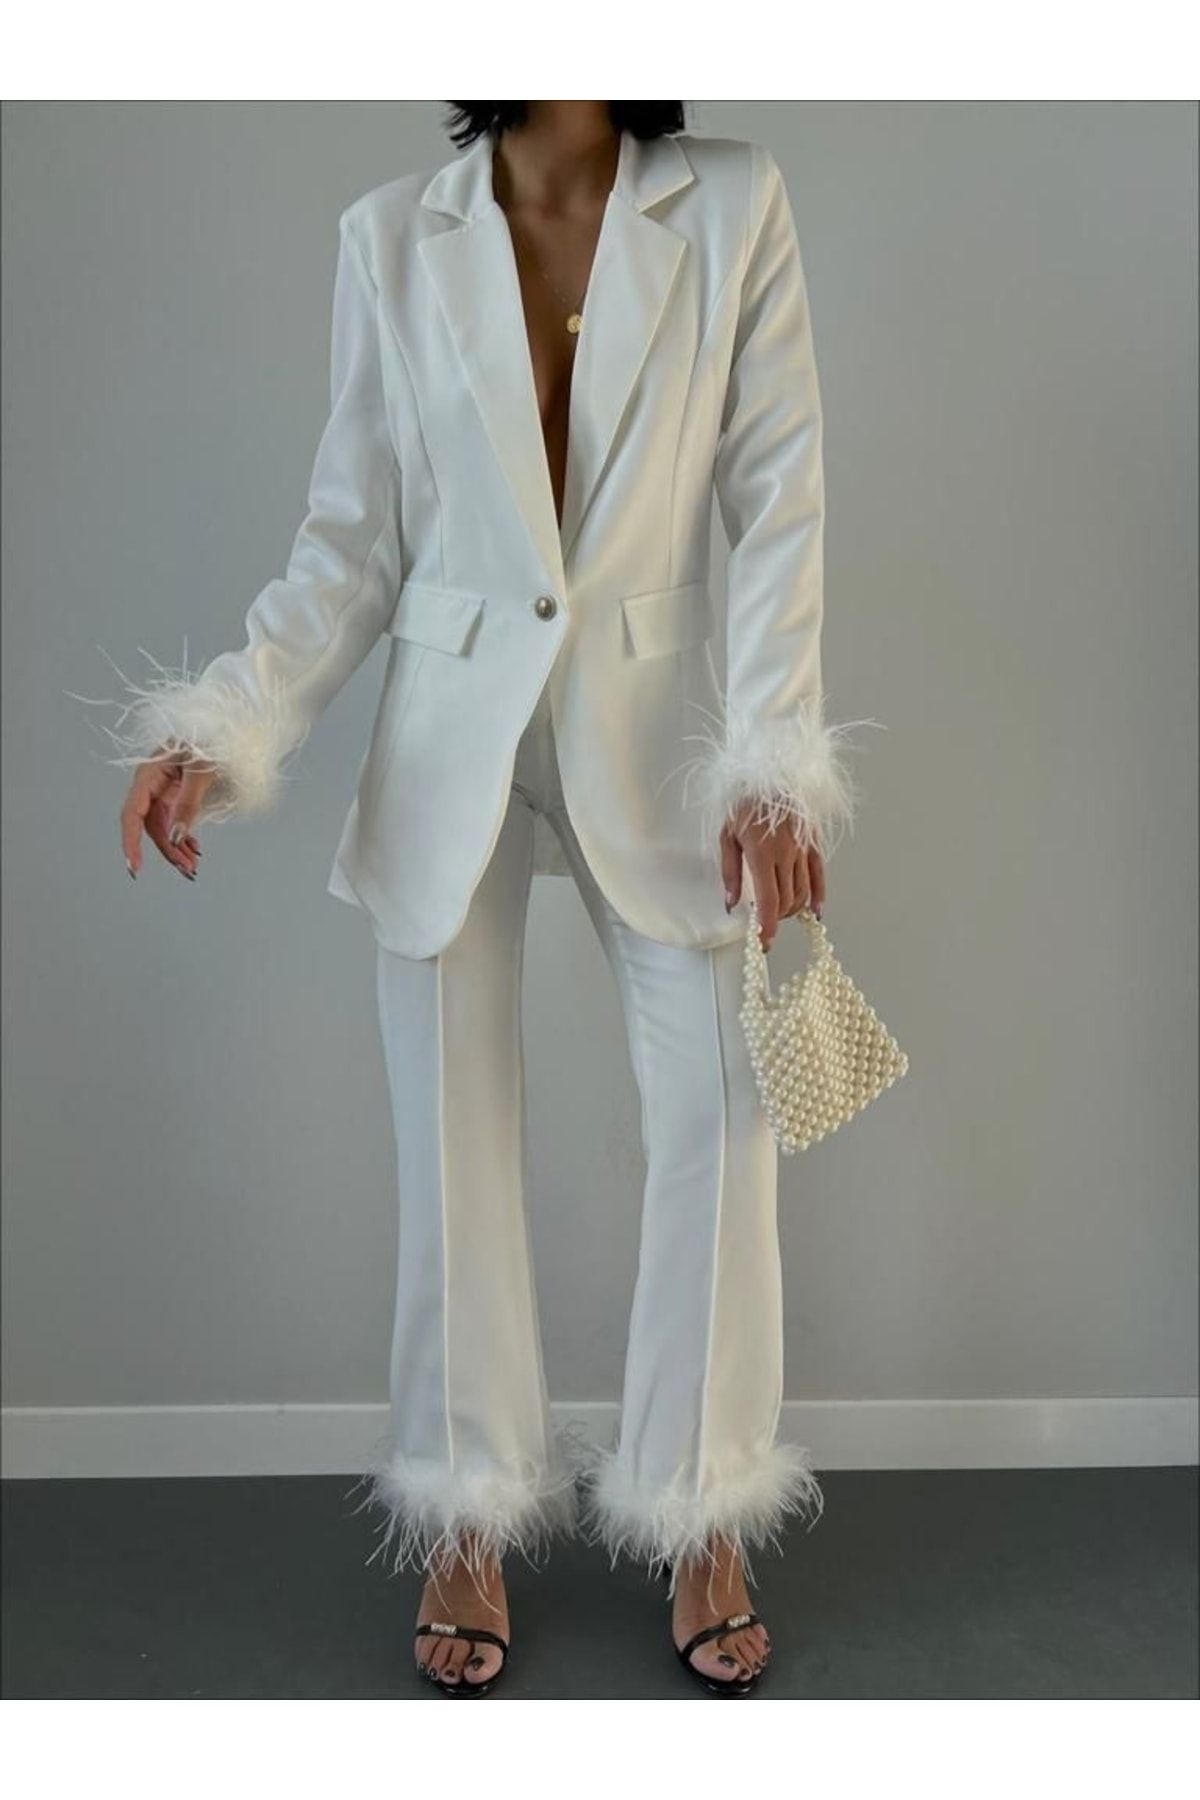 kupakizi kadın beyaz tüy detaylı takım elbise fiyatı yorumları trendyol